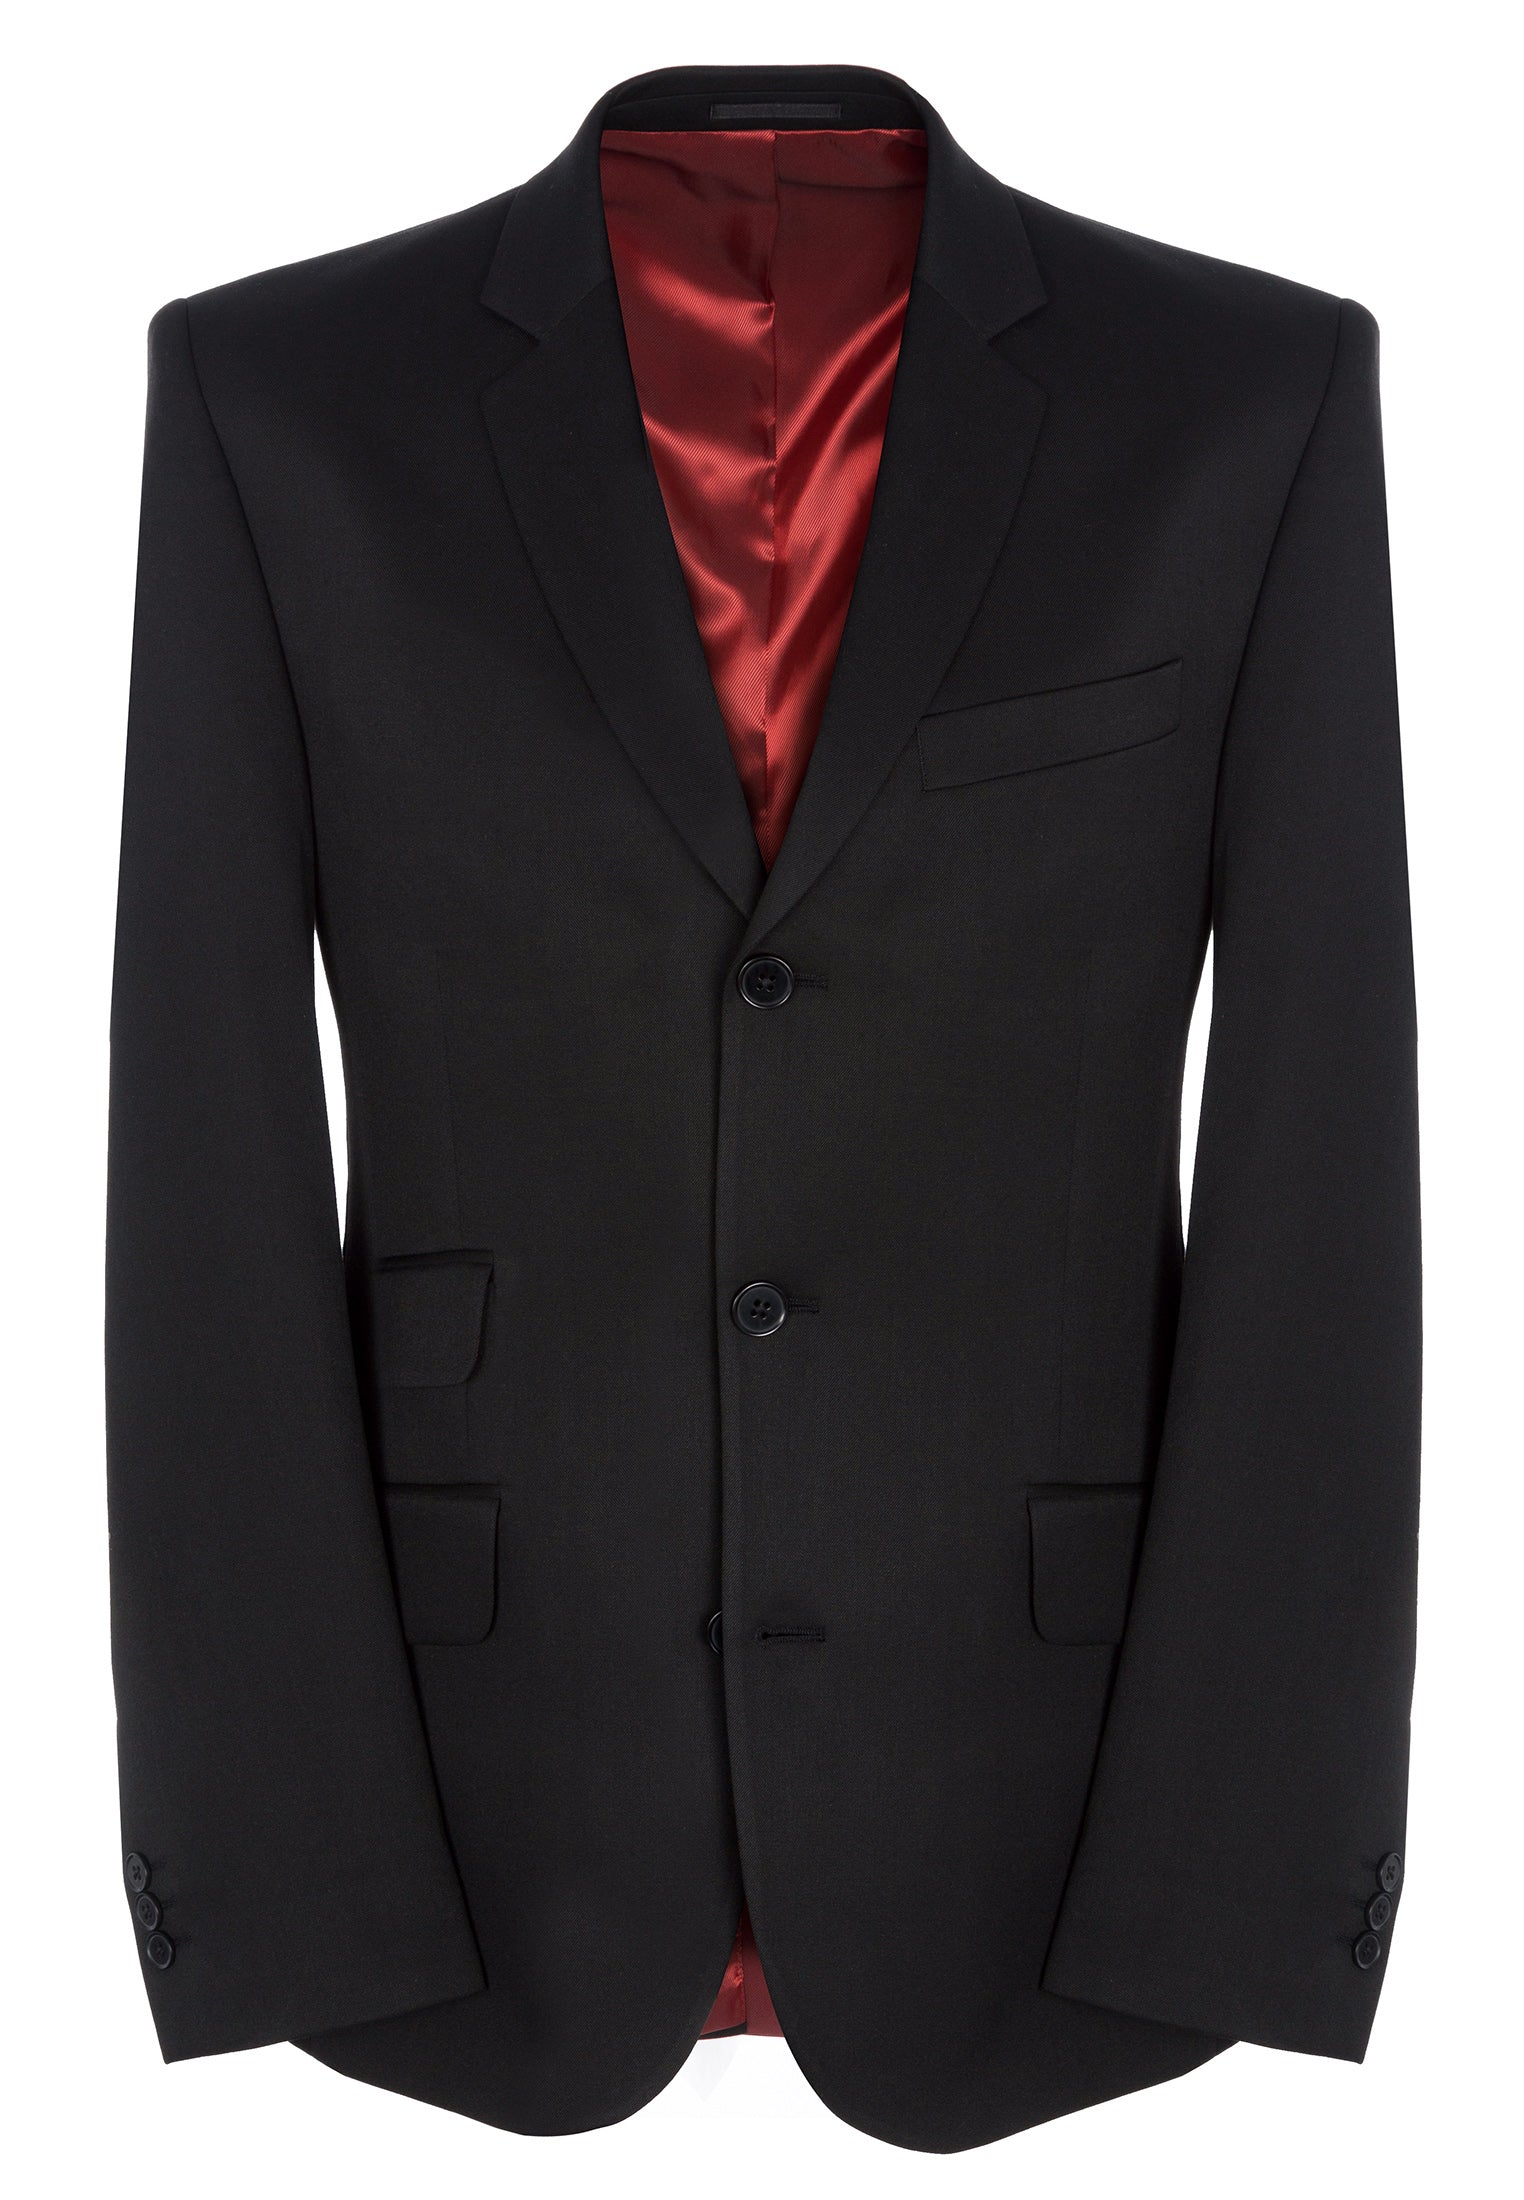 Plain Black Suit Jacket - Merc London